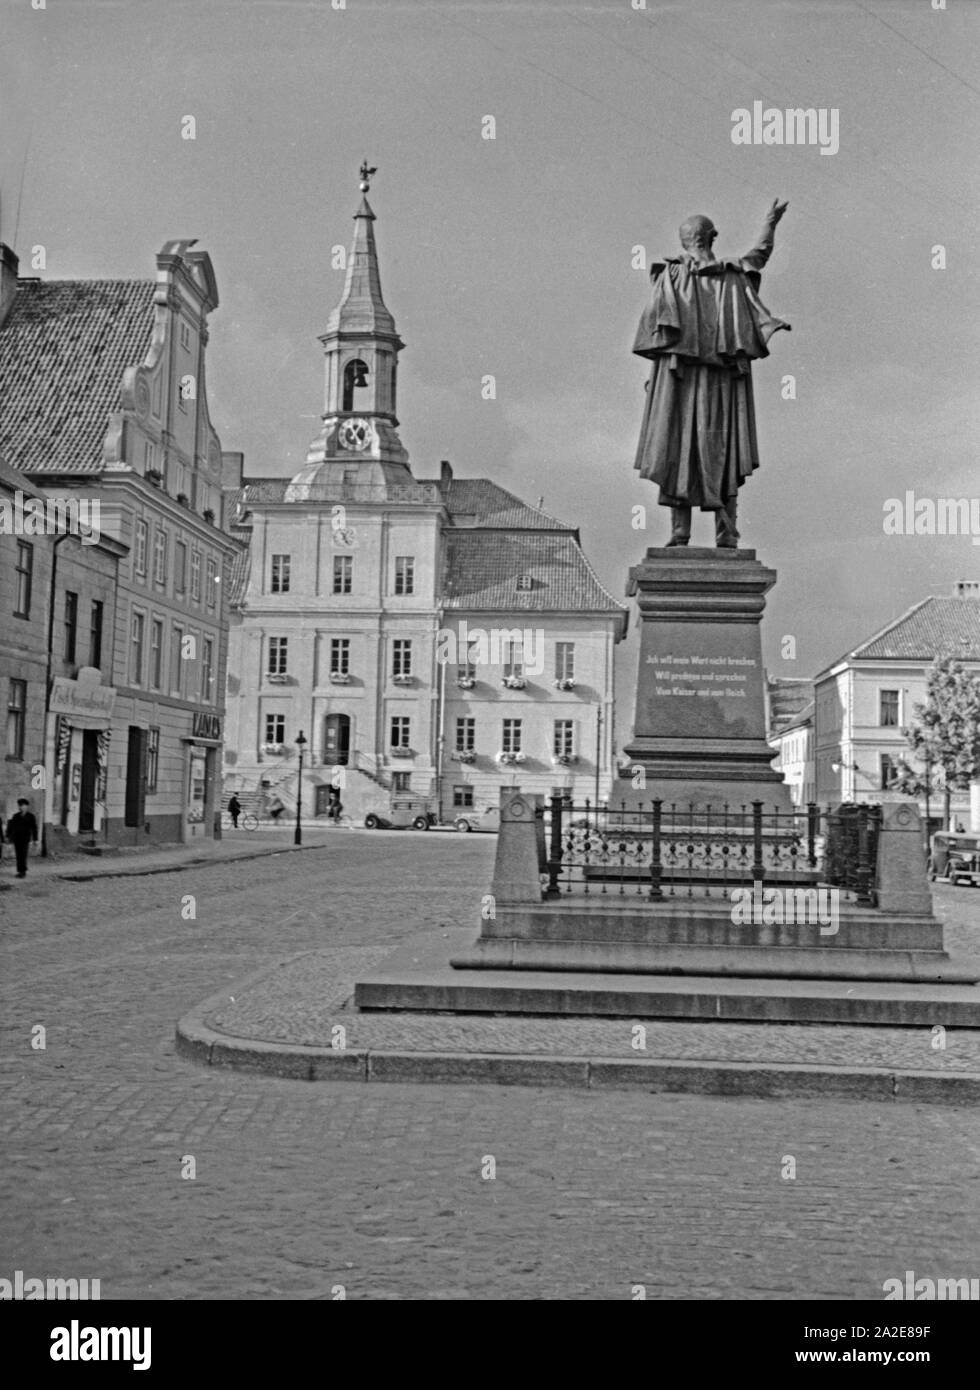 Das Schenkendorf Denkmal und das Rathaus in Tilsit, Ostpreußen, 1930er Jahre. Schenkendorf monument and town hall of Tilsit, East Prussia, 1930s. Stock Photo